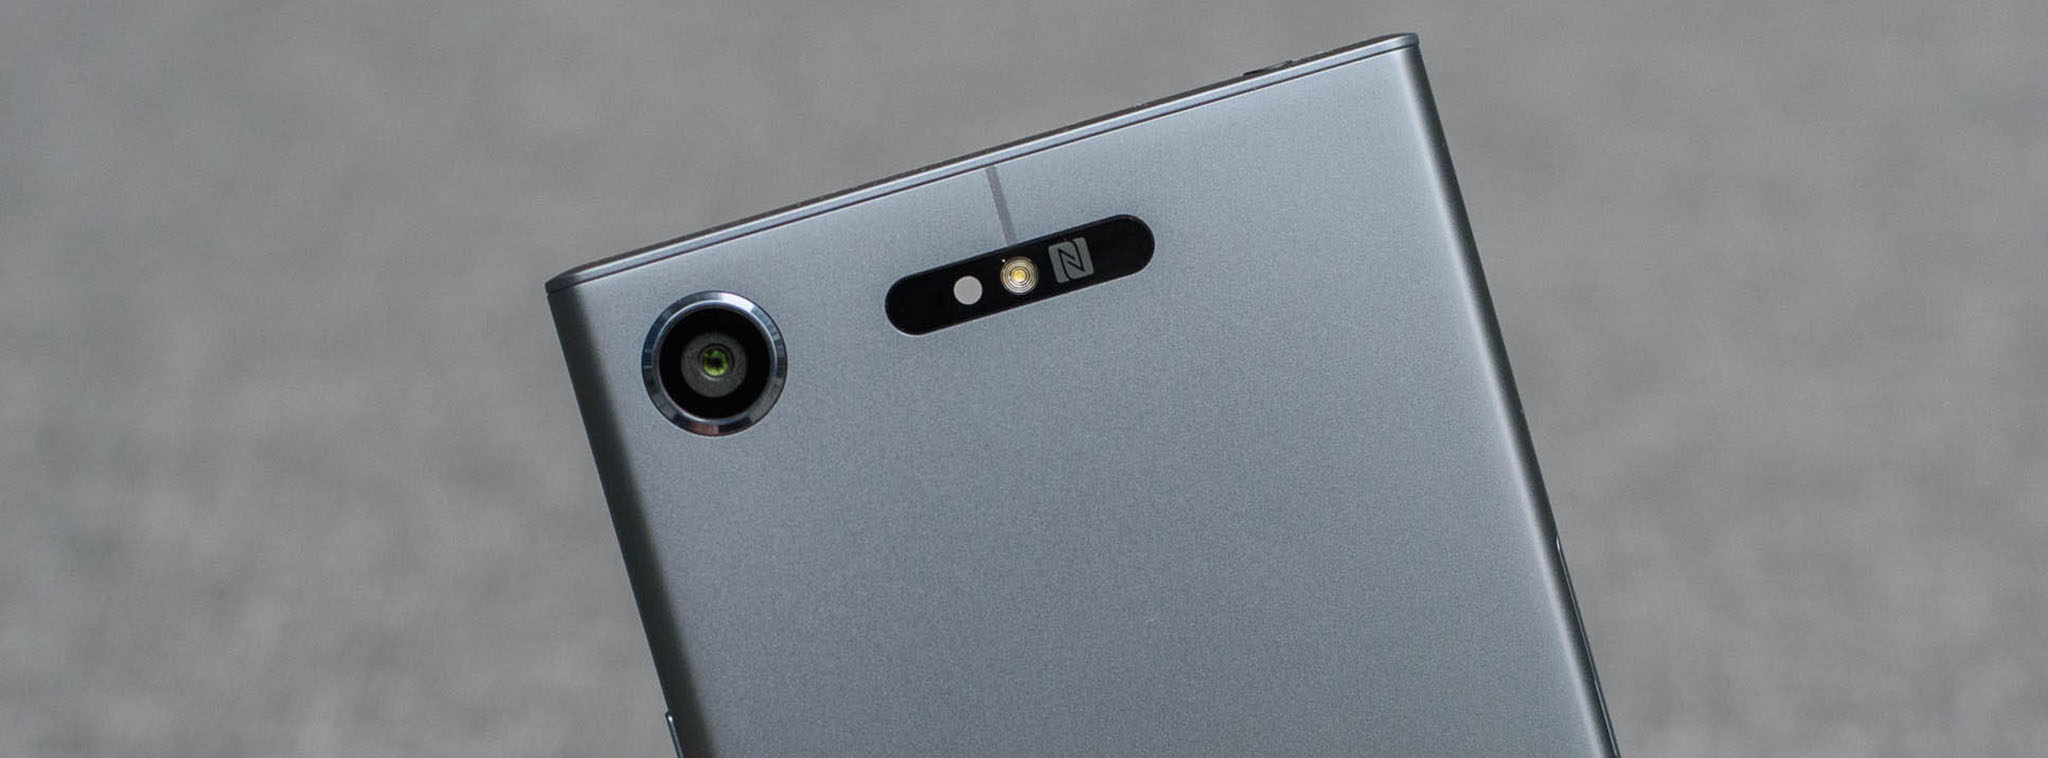 Trải nghiệm camera Sony Xperia XZ1: đẹp,nhanh nhưng không khác nhiều nhiều so với XZ Premium